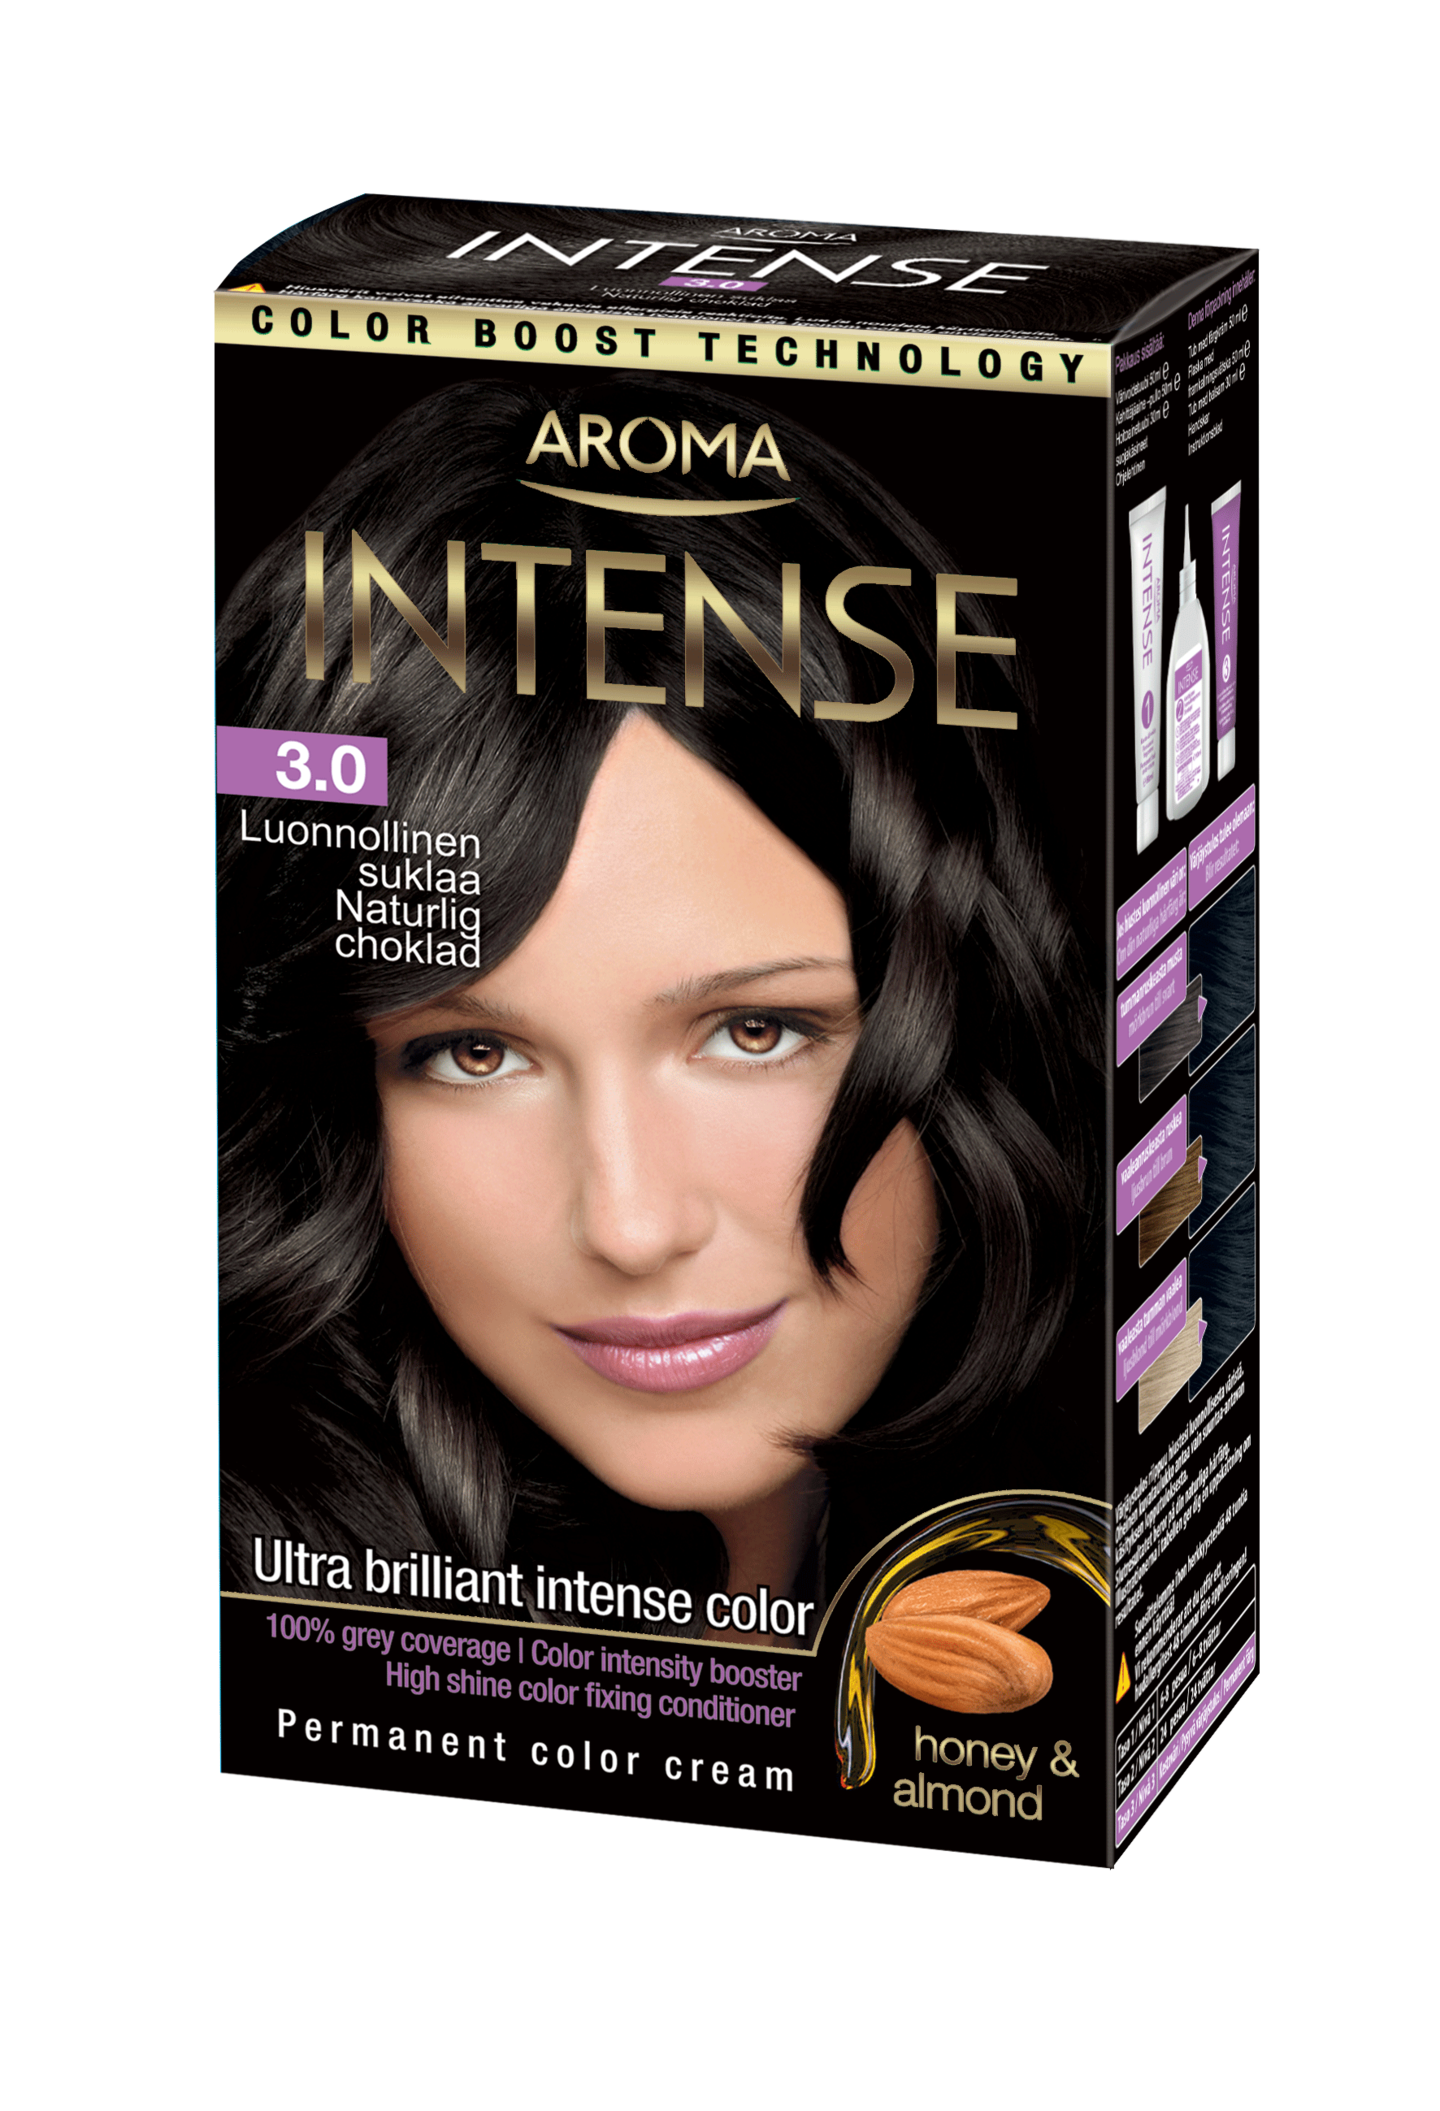 Aroma Intense hiusväri 3.0 Luonnollinen suklaa